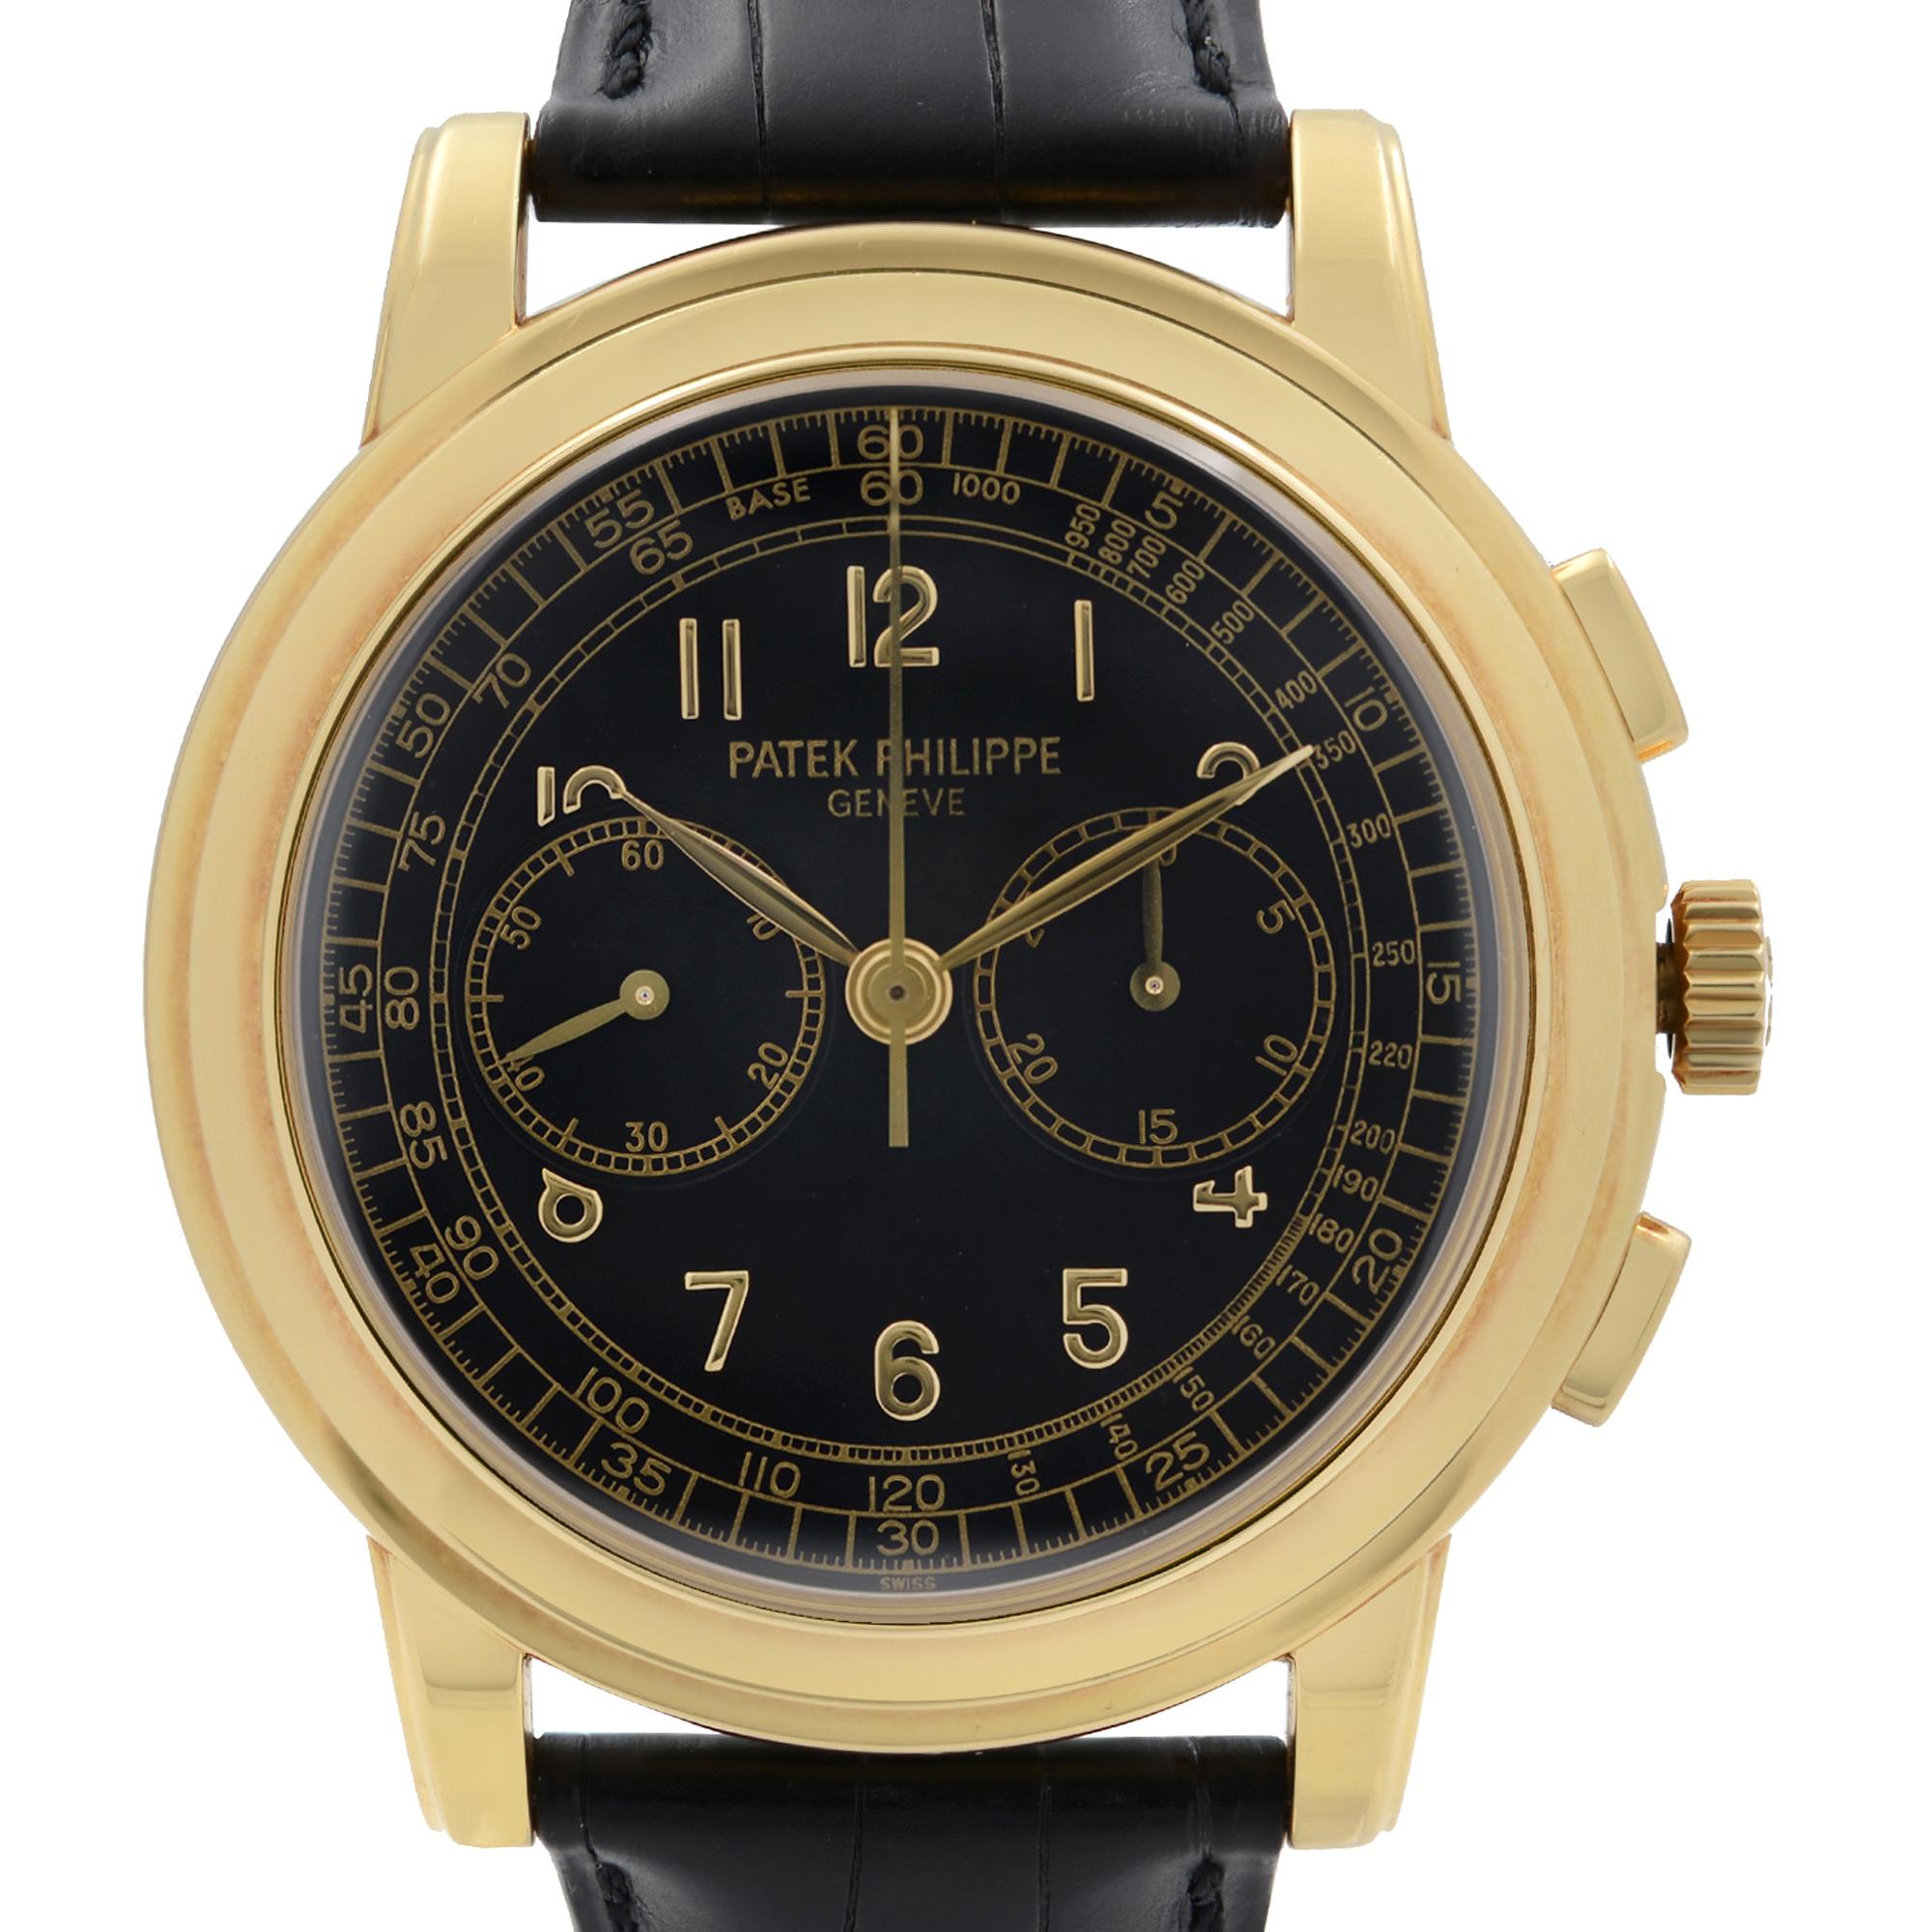 Pre Owned Patek Philippe Complications Chronograph Yellow Gold Hand Wind Watch 5070J-001. Cette magnifique pièce d'horlogerie est animée par un mouvement mécanique (manuel) et présente les caractéristiques suivantes : Boîtier rond en or jaune 18